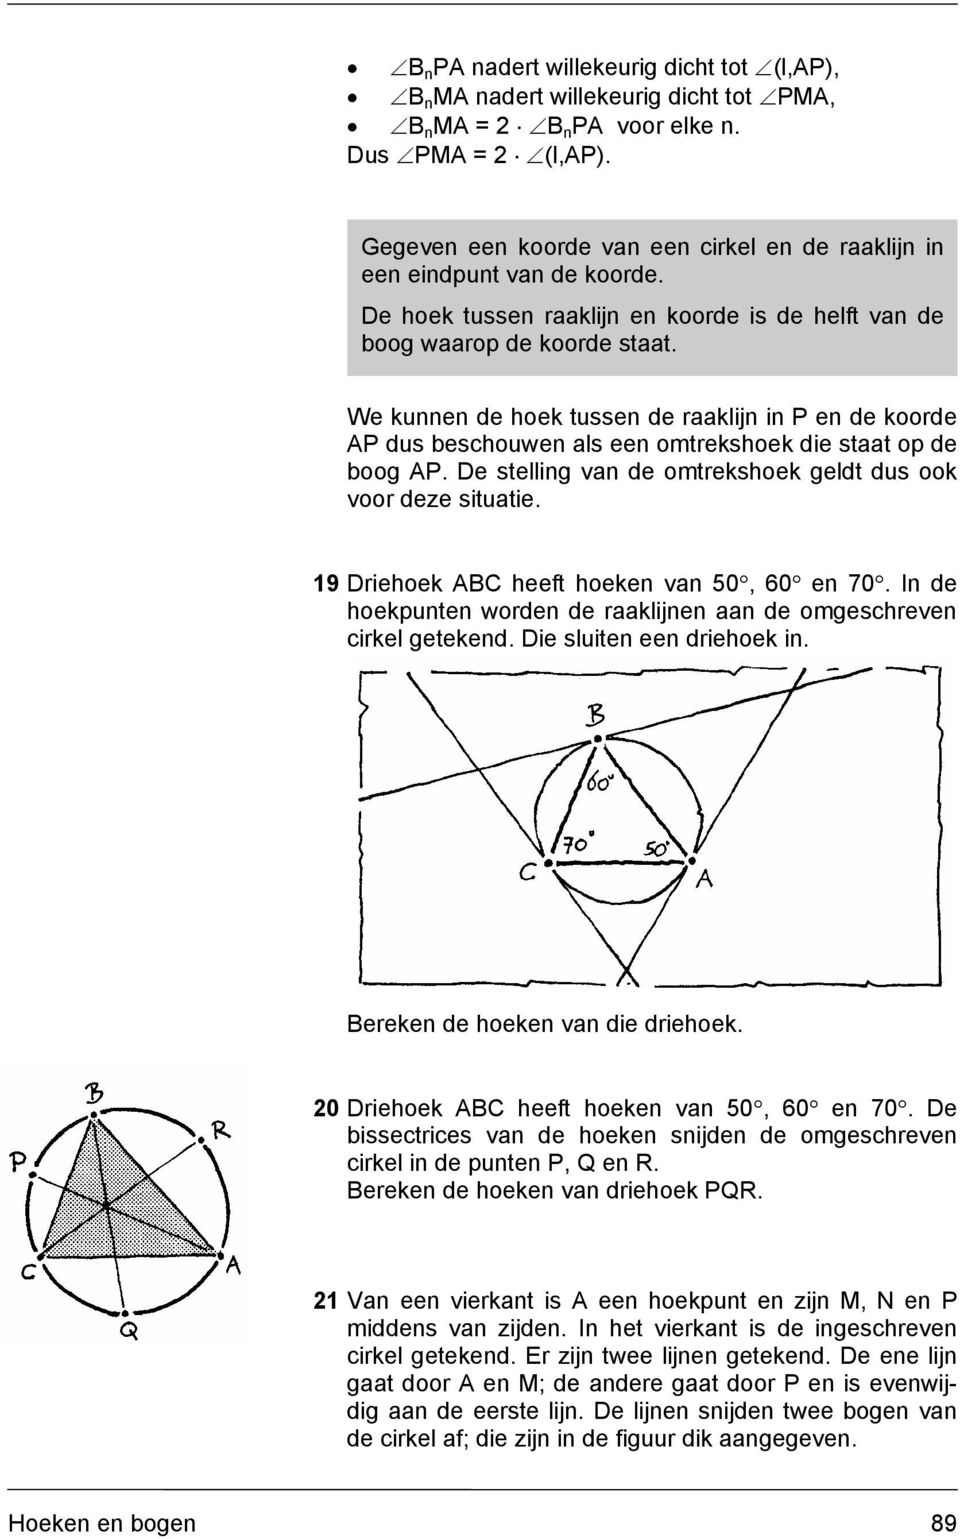 De stelling van de omtrekshoek geldt dus ook voor deze situatie. 19 Driehoek heeft hoeken van 50, 60 en 70. In de hoekpunten worden de raaklijnen aan de omgeschreven cirkel getekend.